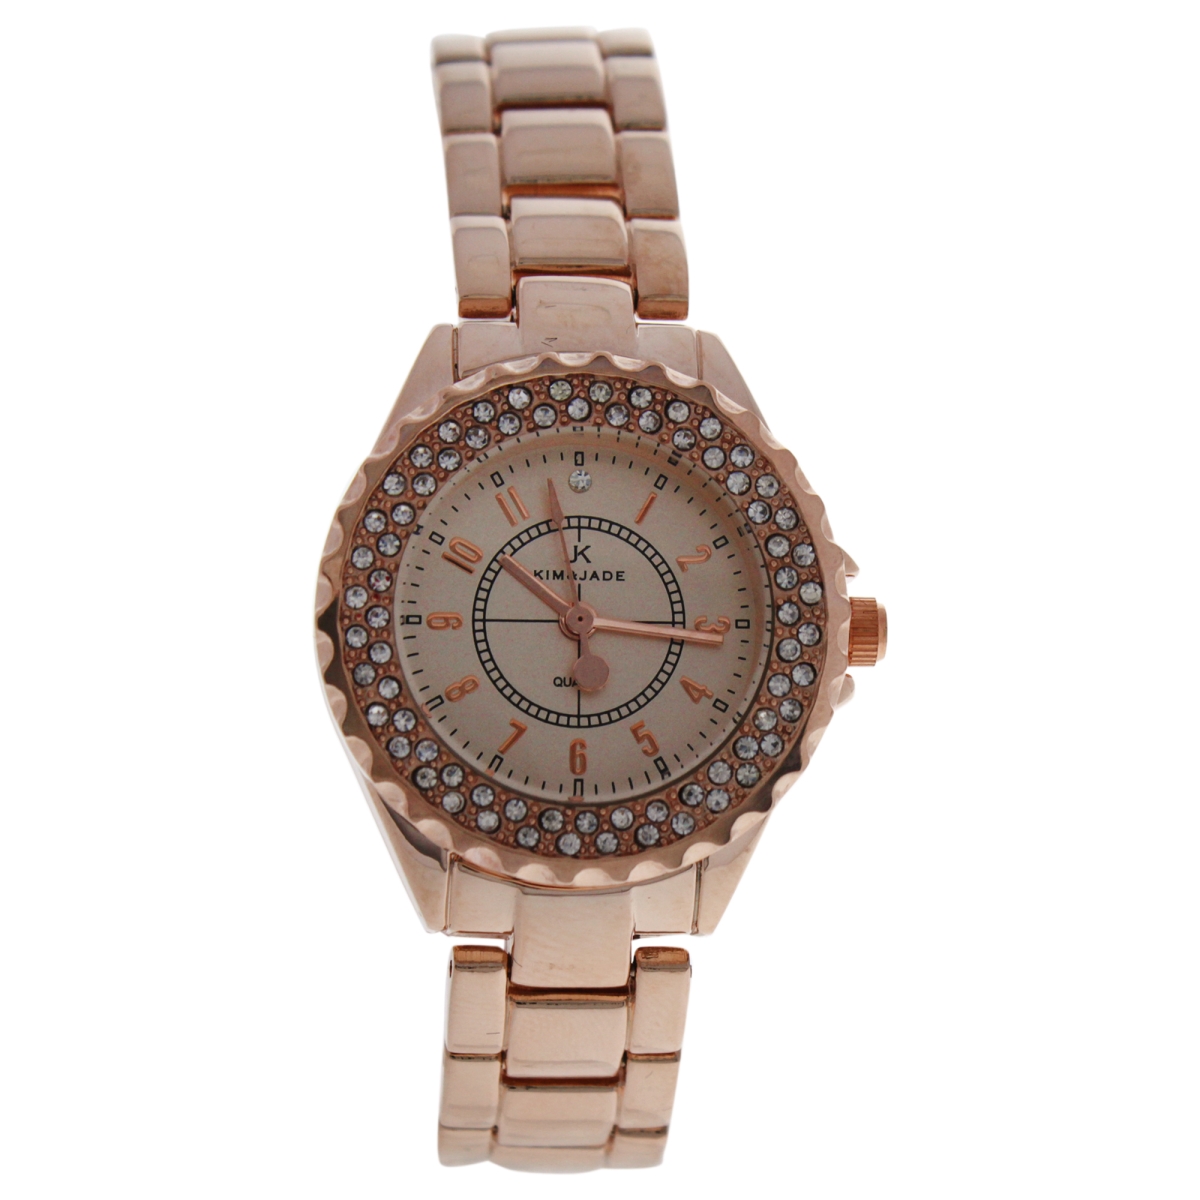 W-wat-1524 Rose Gold Stainless Steel Bracelet Watch For Women - 2033l Gpgp